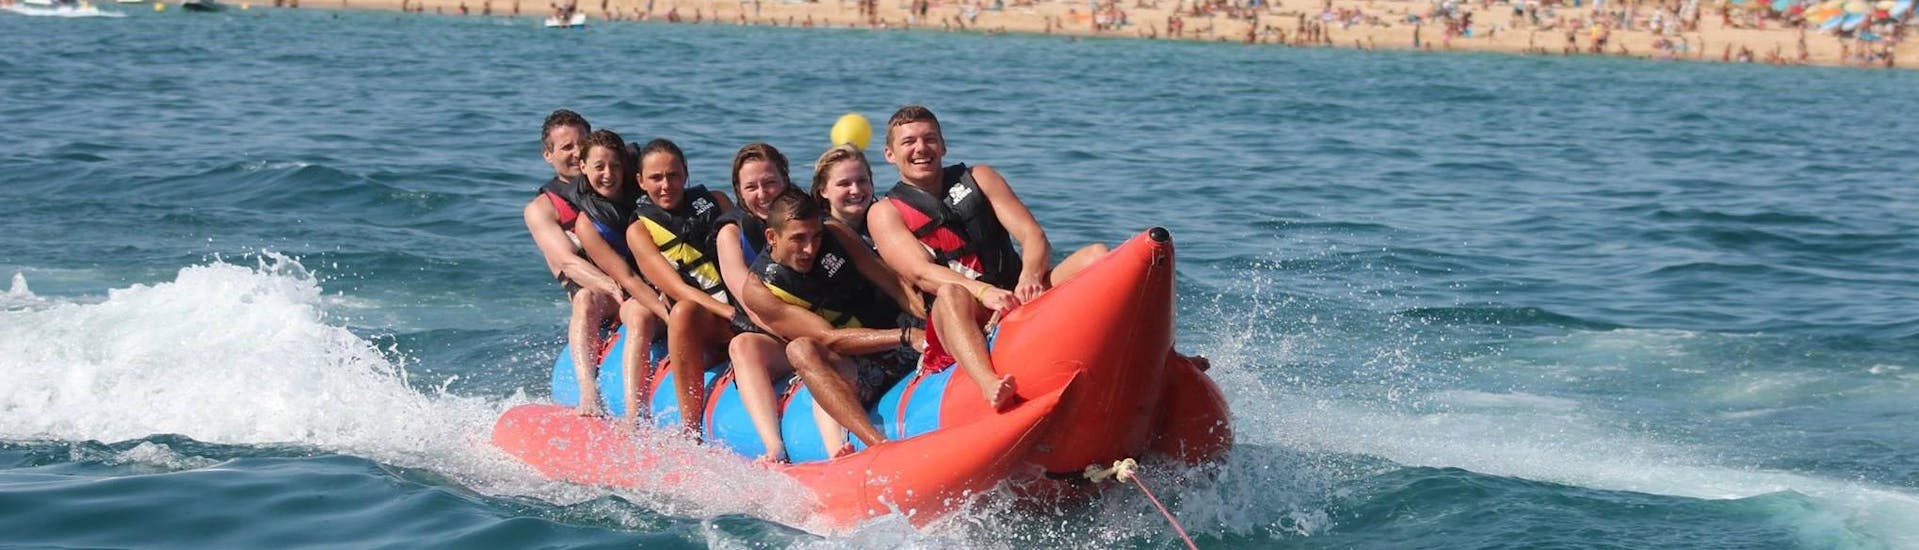 Une famille s'amusant dans la mer lors d'une activité Banana boat et autres activités à Prada da Rocha Baixinha.